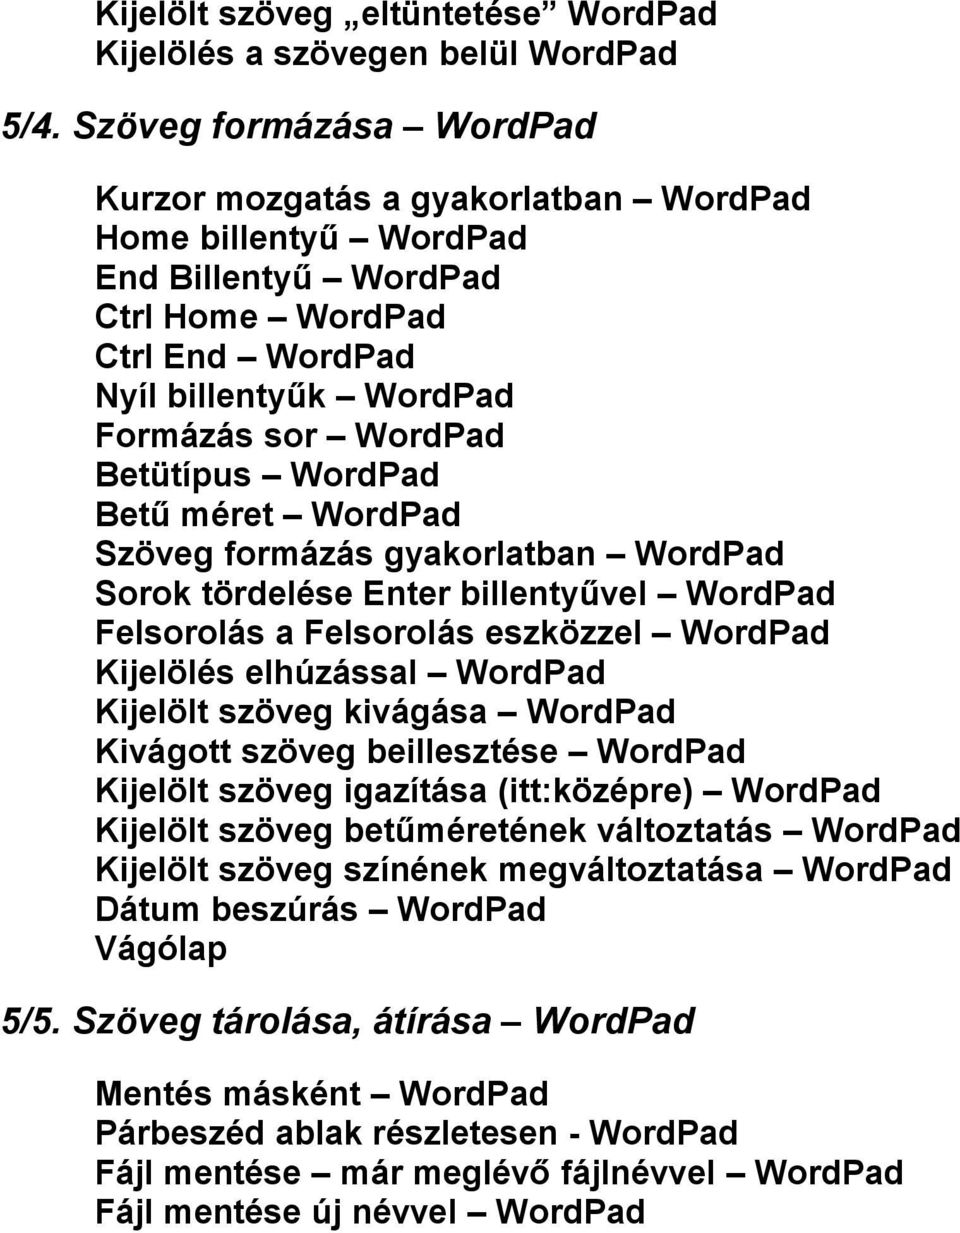 WordPad Betű méret WordPad Szöveg formázás gyakorlatban WordPad Sorok tördelése Enter billentyűvel WordPad Felsorolás a Felsorolás eszközzel WordPad Kijelölés elhúzással WordPad Kijelölt szöveg